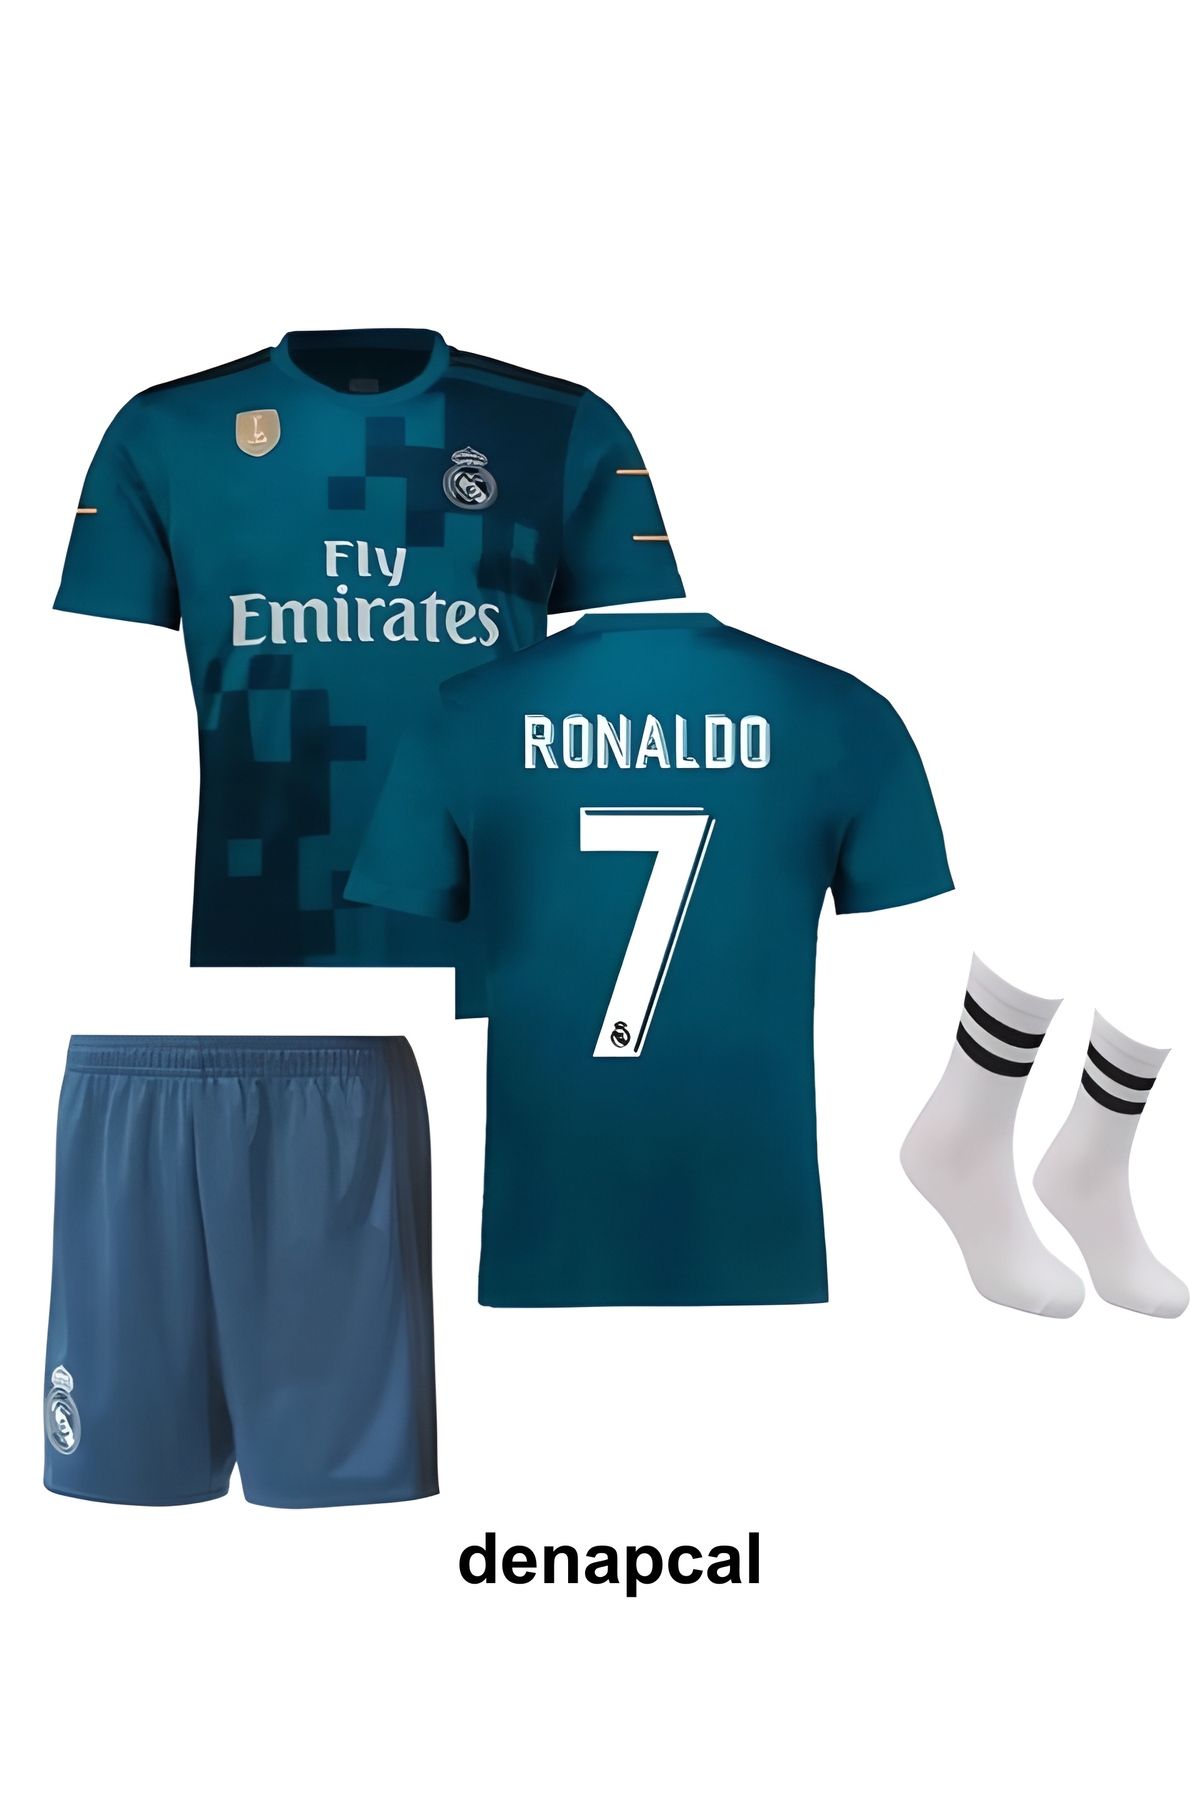 DENAPCAL Ronaldo Turkuaz-mavi 2018 Real Madrid Deplasman 3'lü Çoçuk Futbol Forma Seti